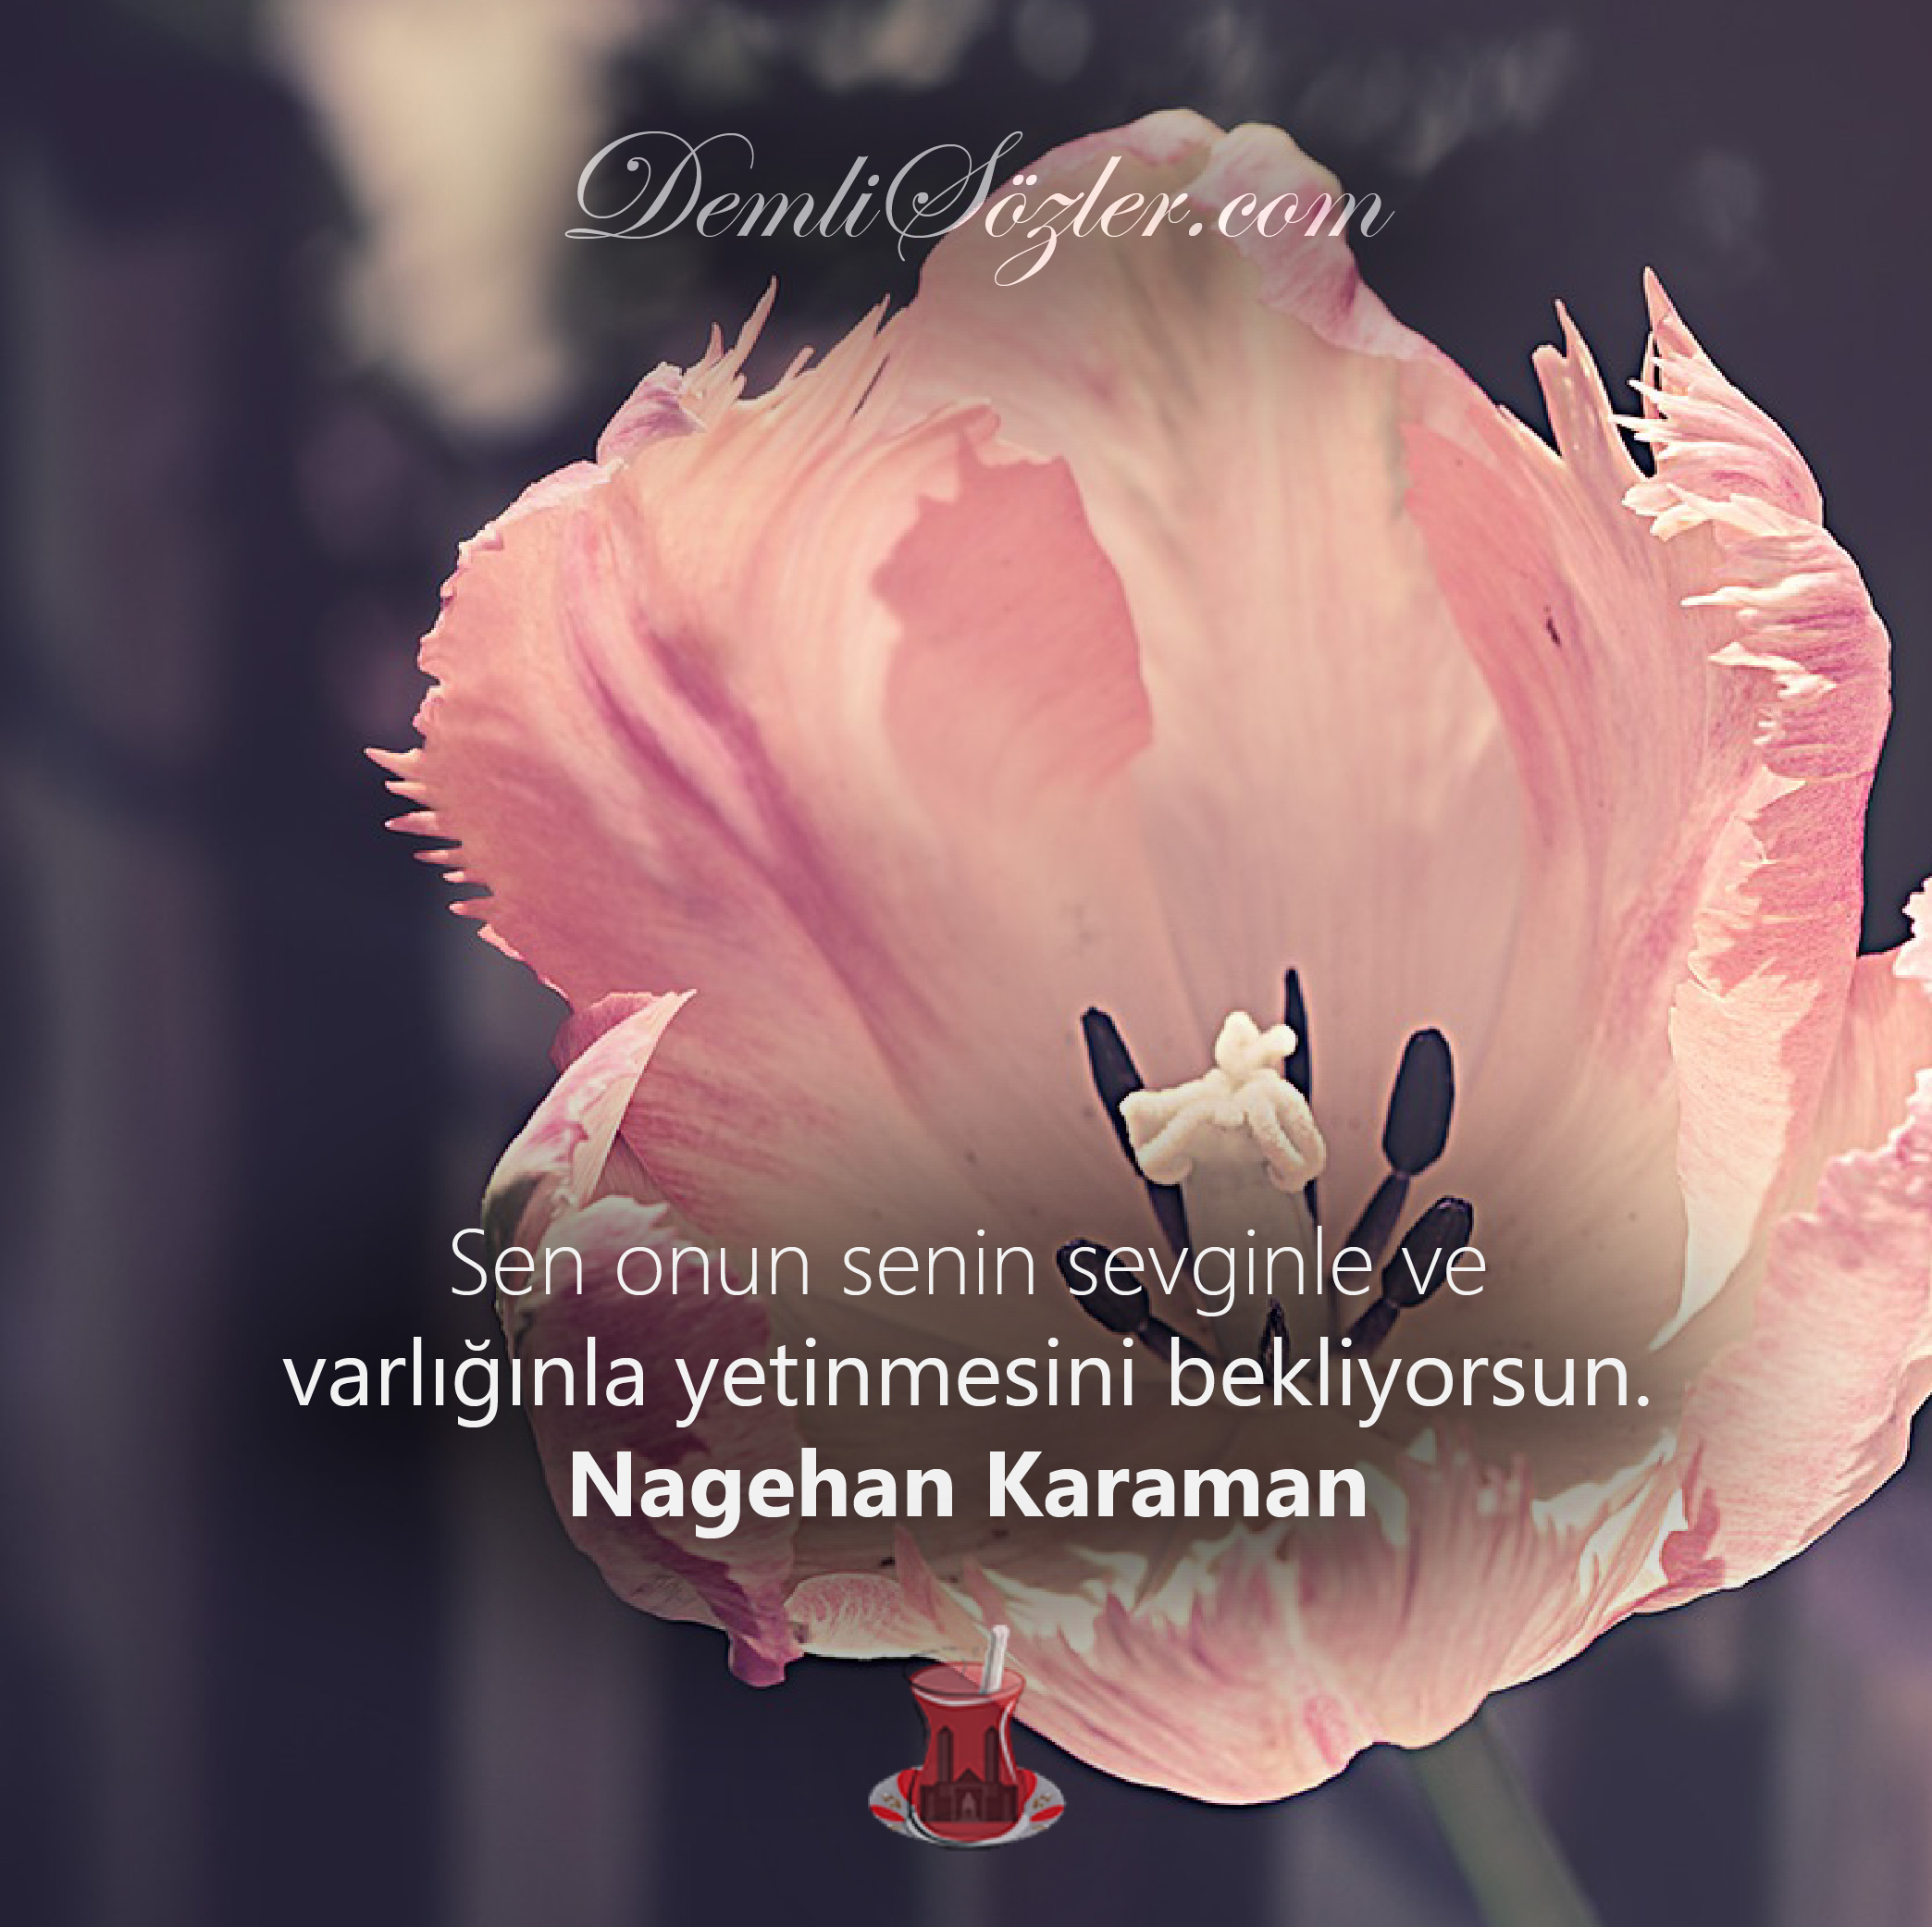 Sen onun senin sevginle ve varlığınla yetinmesini bekliyorsun. - Nagehan Karaman